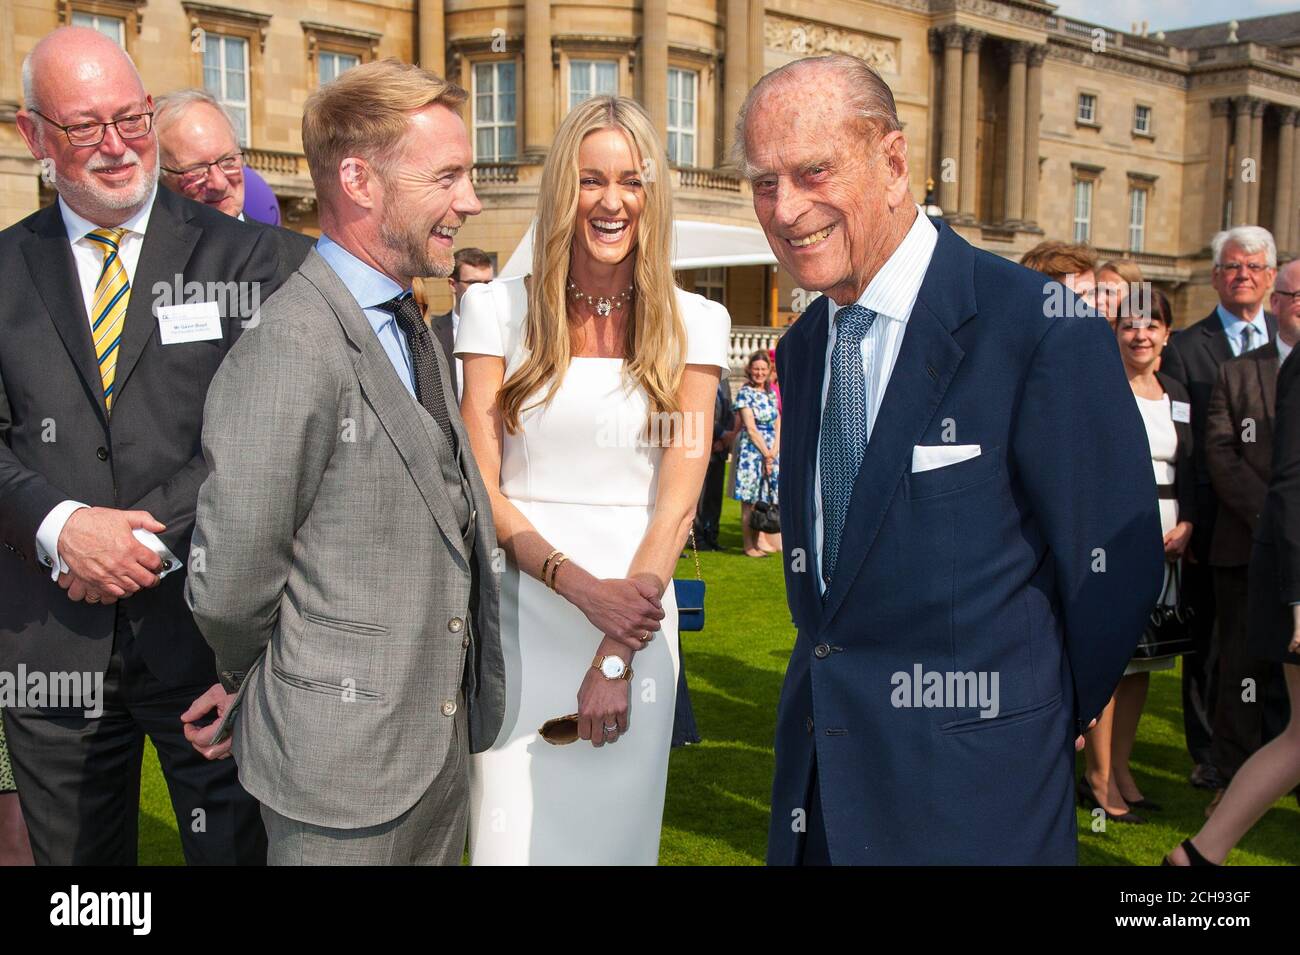 Le duc d'Édimbourg (à droite) parle avec Ronan Keating et sa femme Storm à la fête du jardin du duc d'Édimbourg, au Palais de Buckingham, à Londres. Banque D'Images